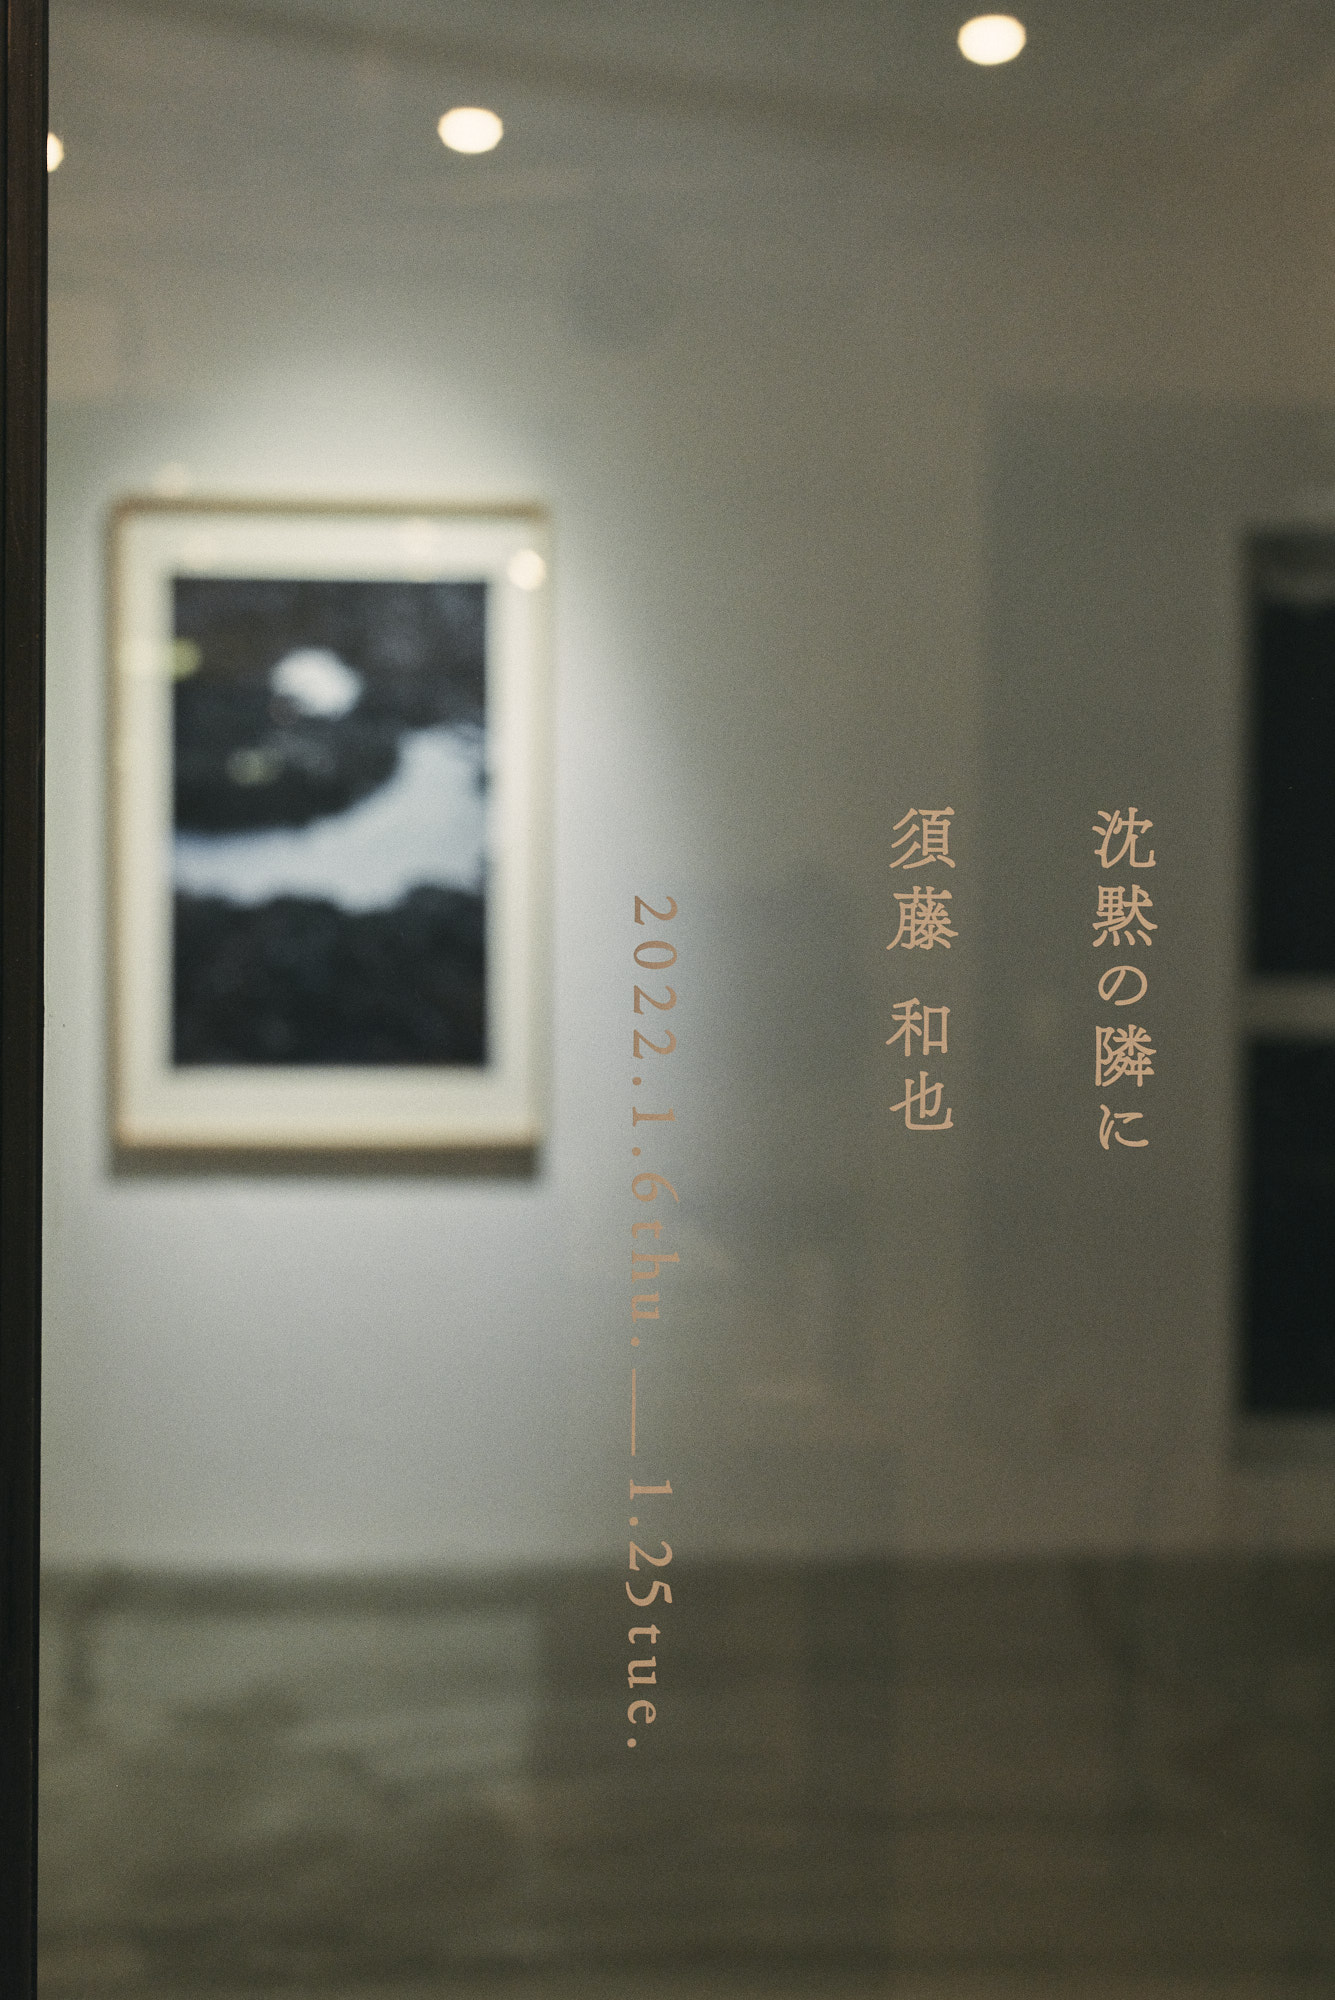 須藤和也が撮影した書籍「鶴子」の写真展示「沈黙の隣に」